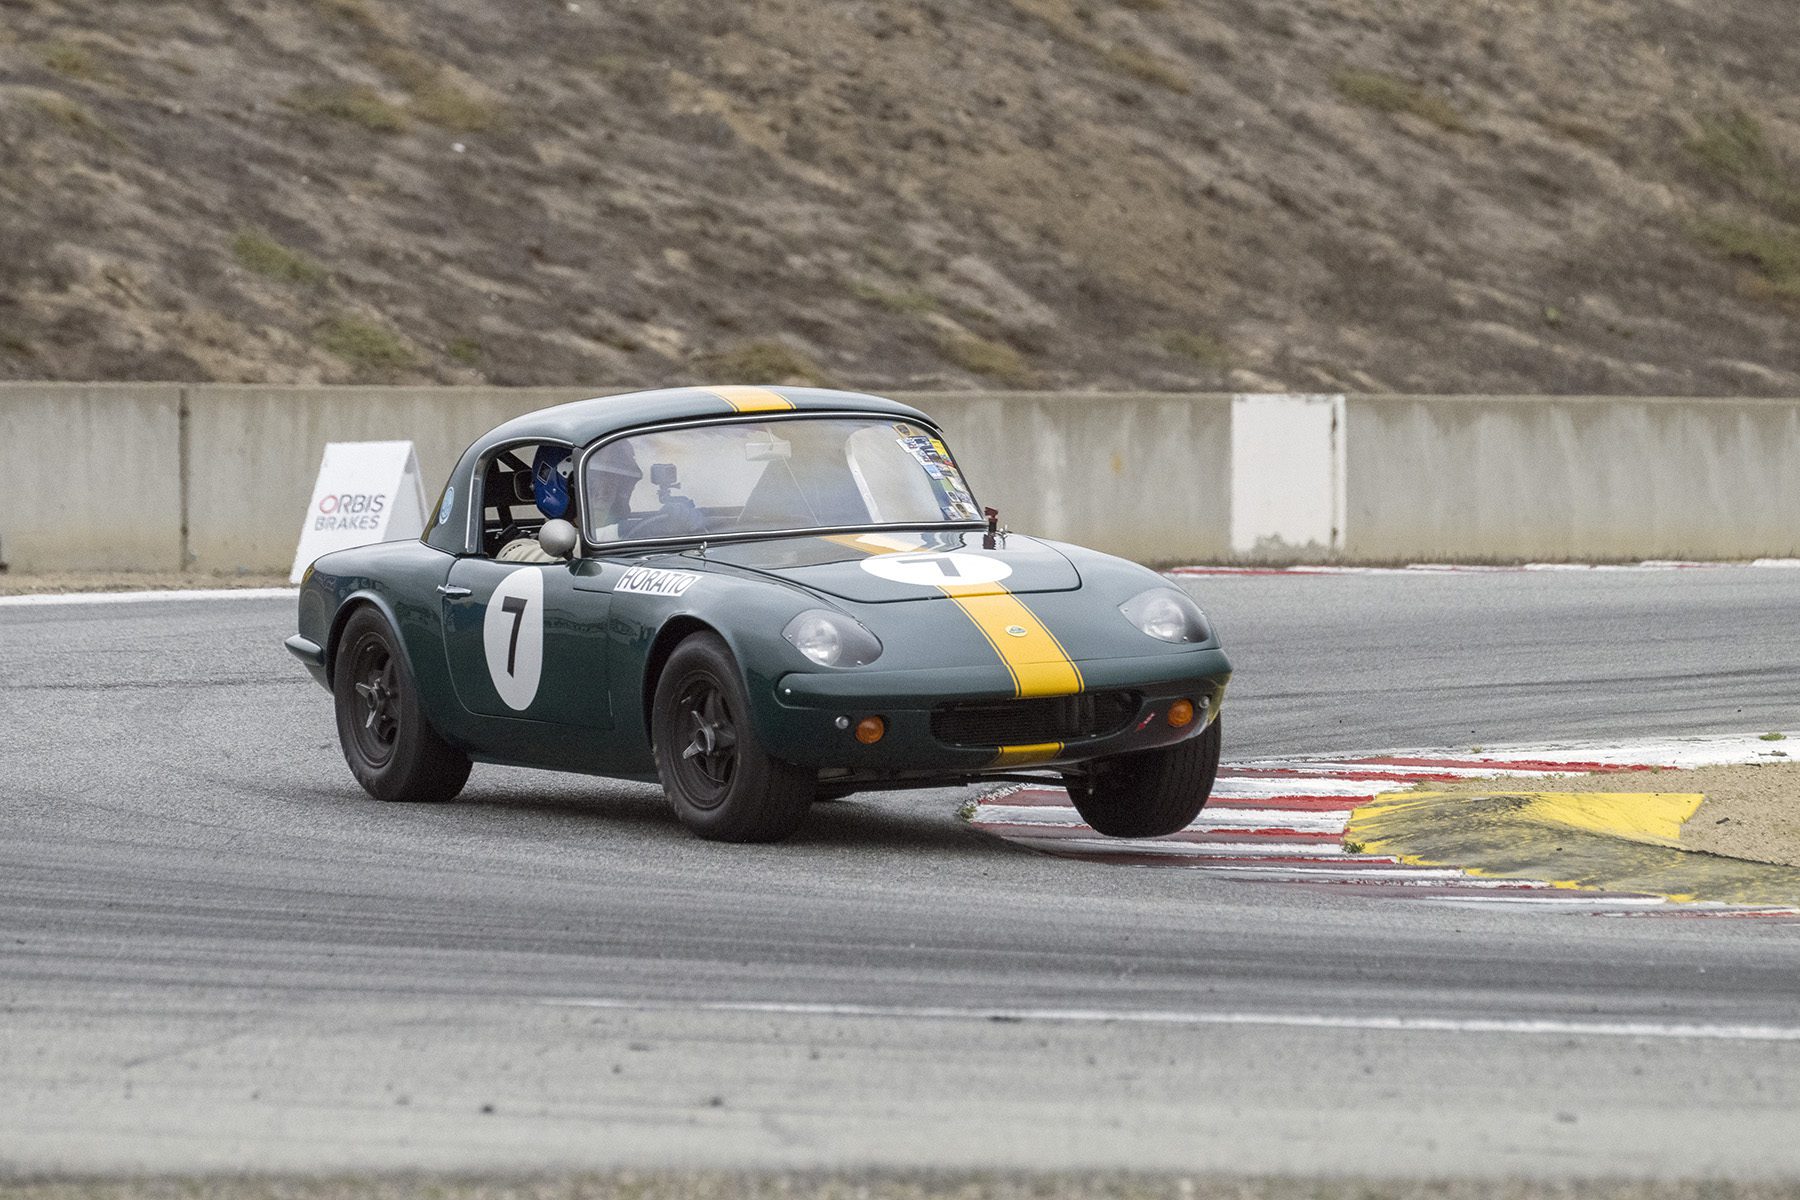 Horatio Fitz-Simon/1963 Lotus Elan 26R in Turn 11 Bill Wagenblatt